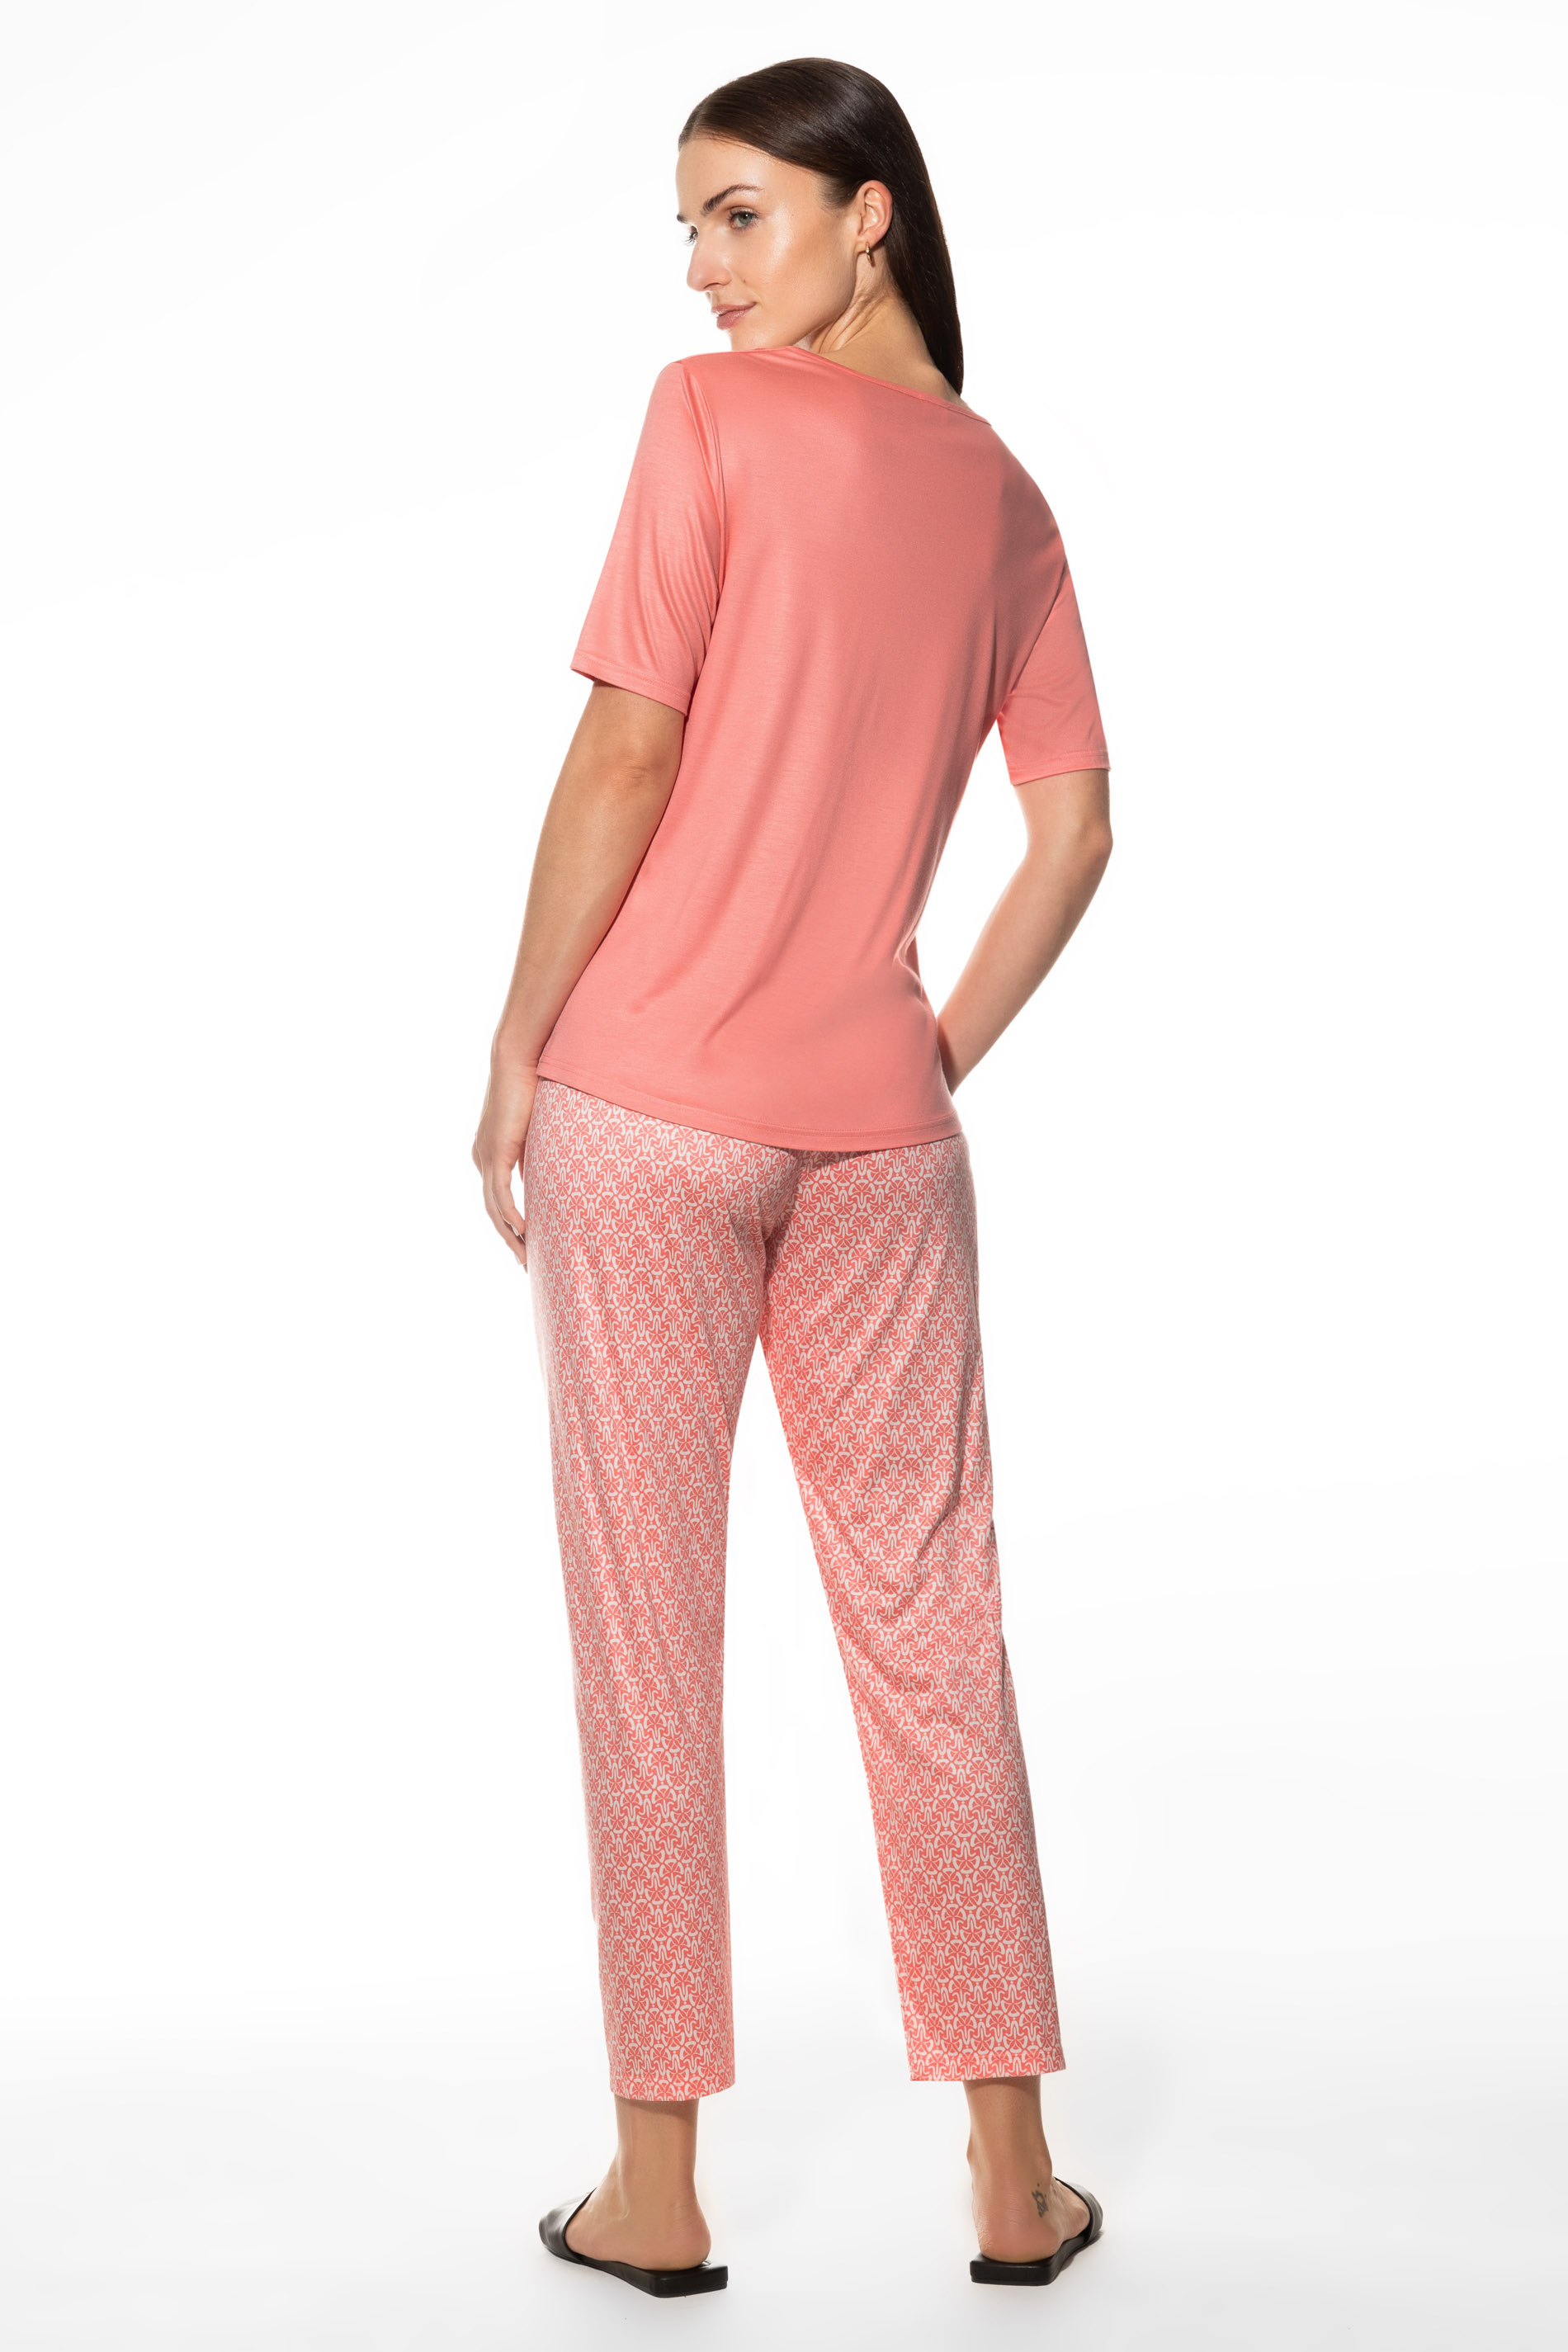 Pyjama Serie Iara Rear View | mey®